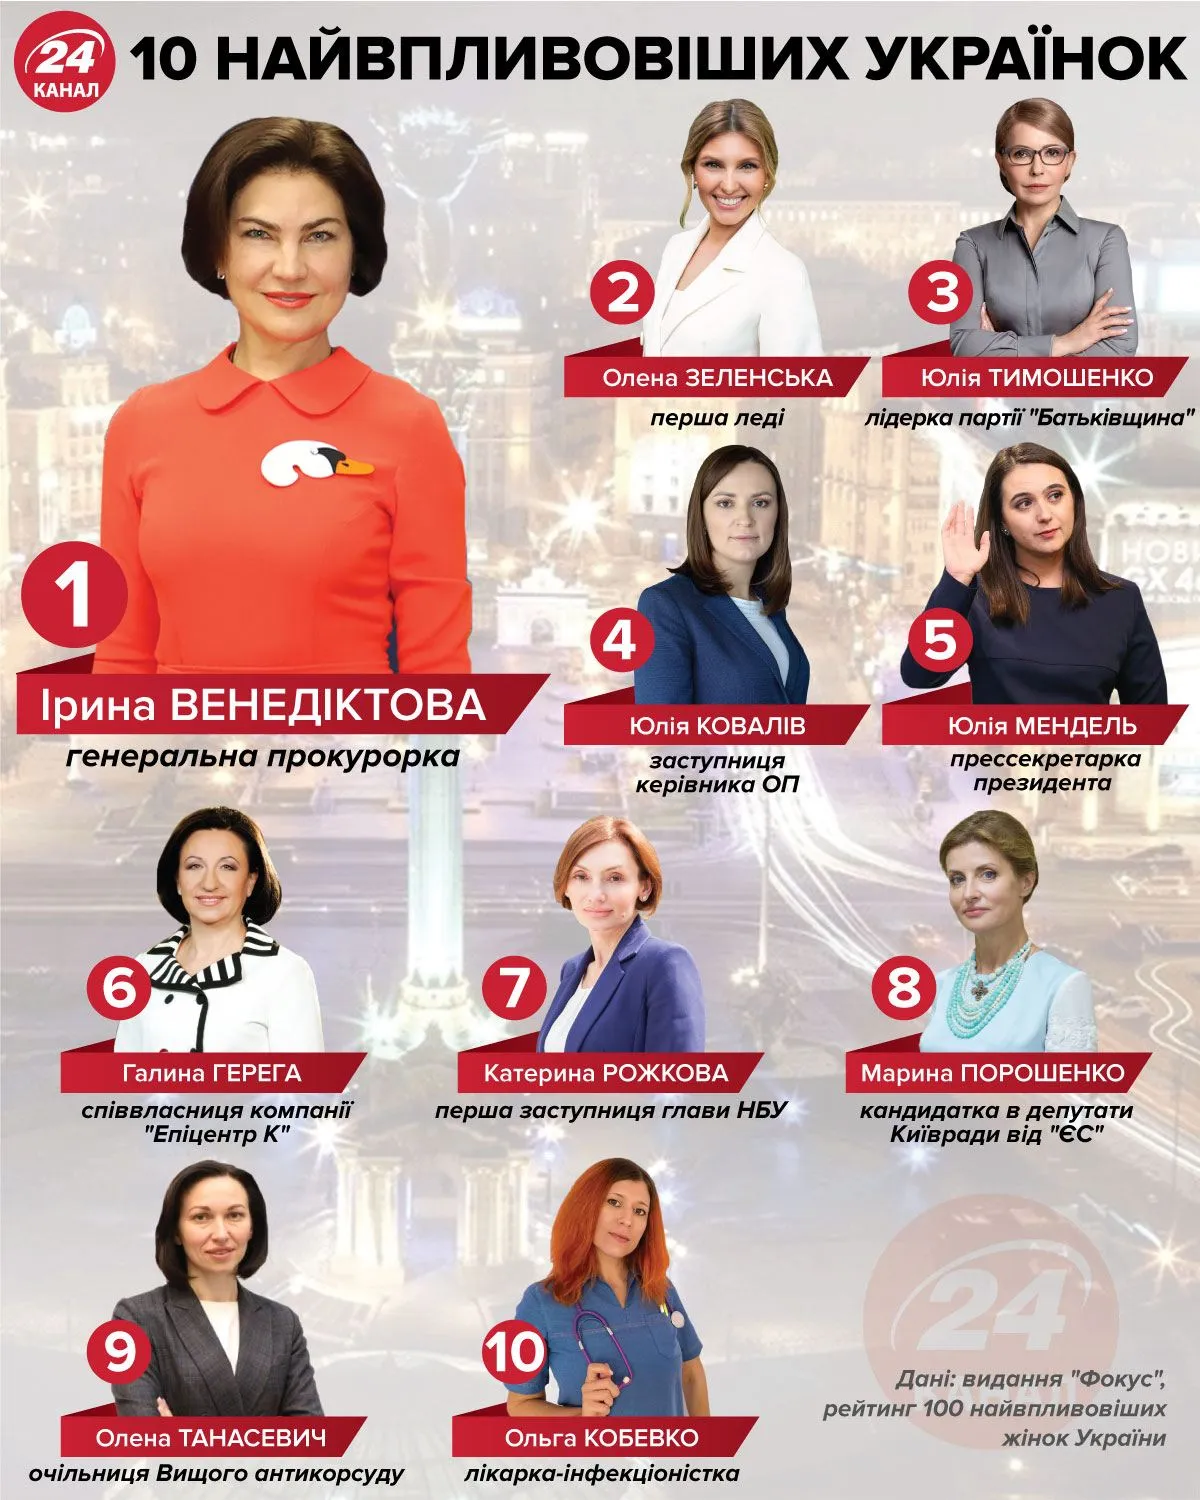 10 найвпливовіших українок інфографіка 24 канал